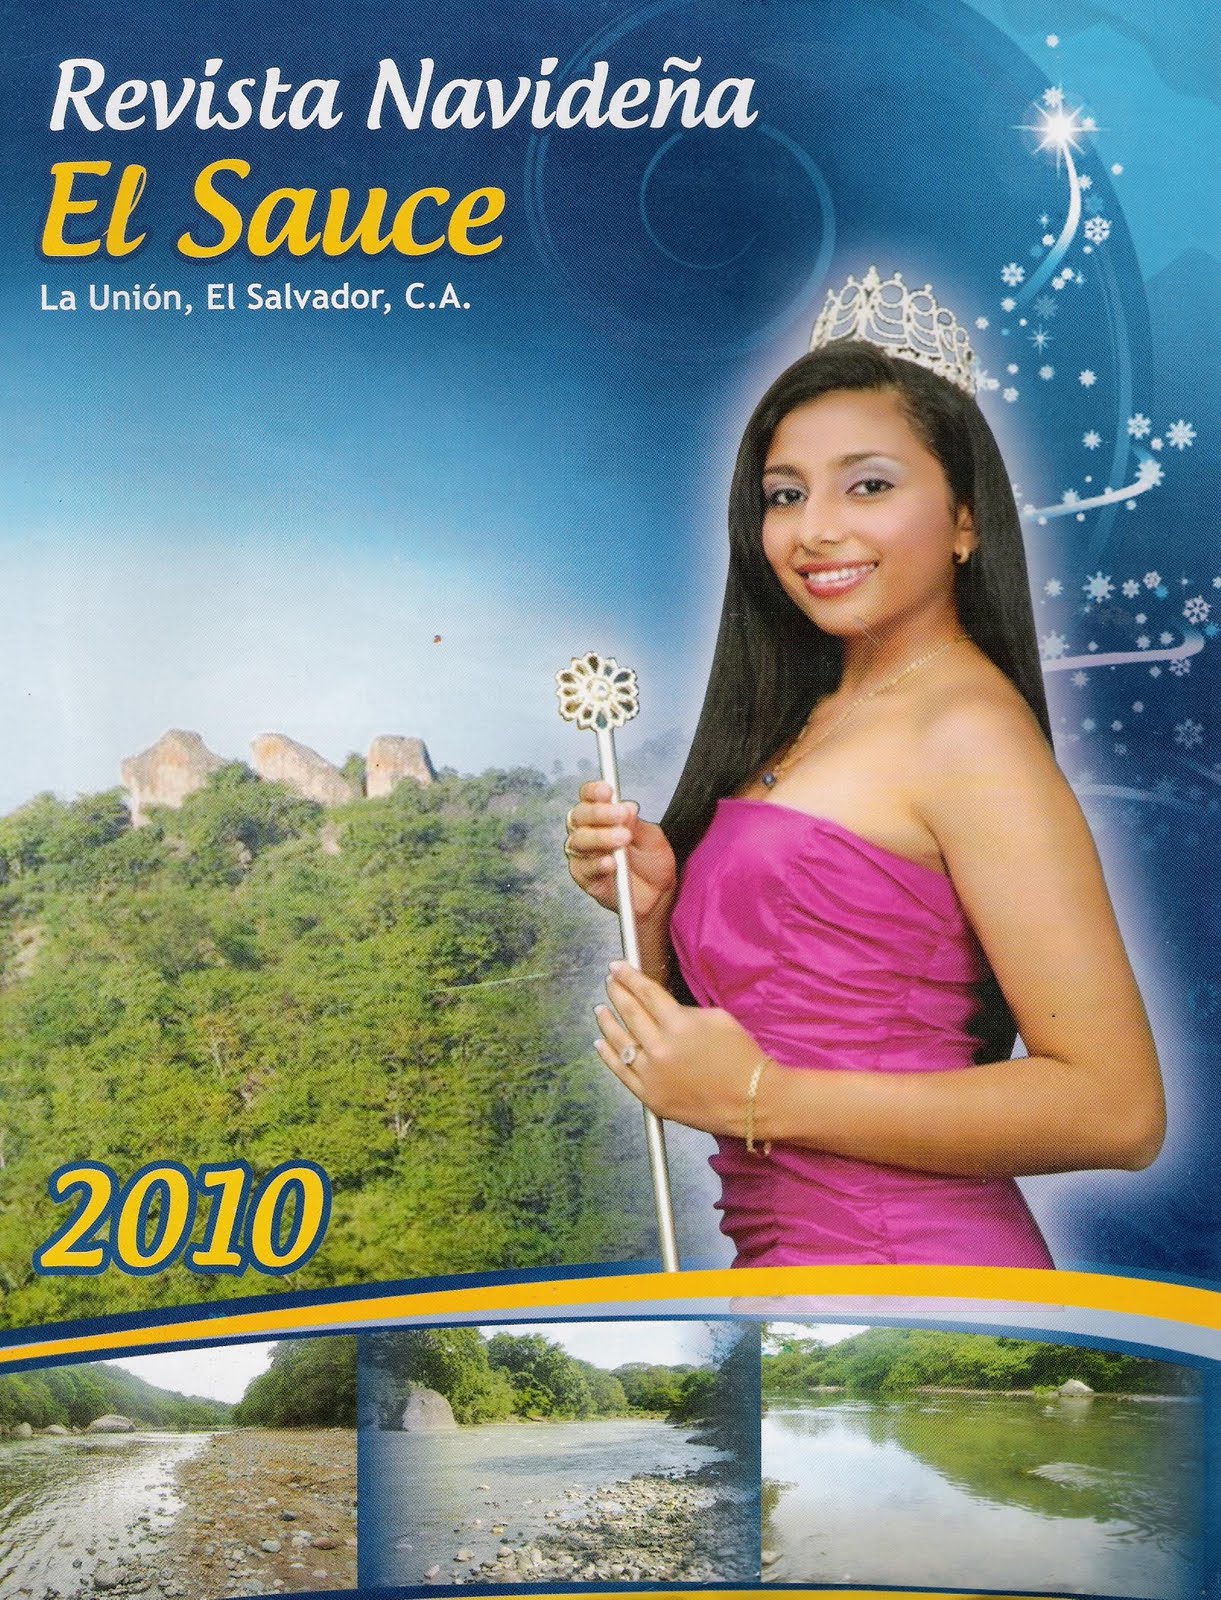 Revista del Año 2010 - Fiestas navideña El Sauce